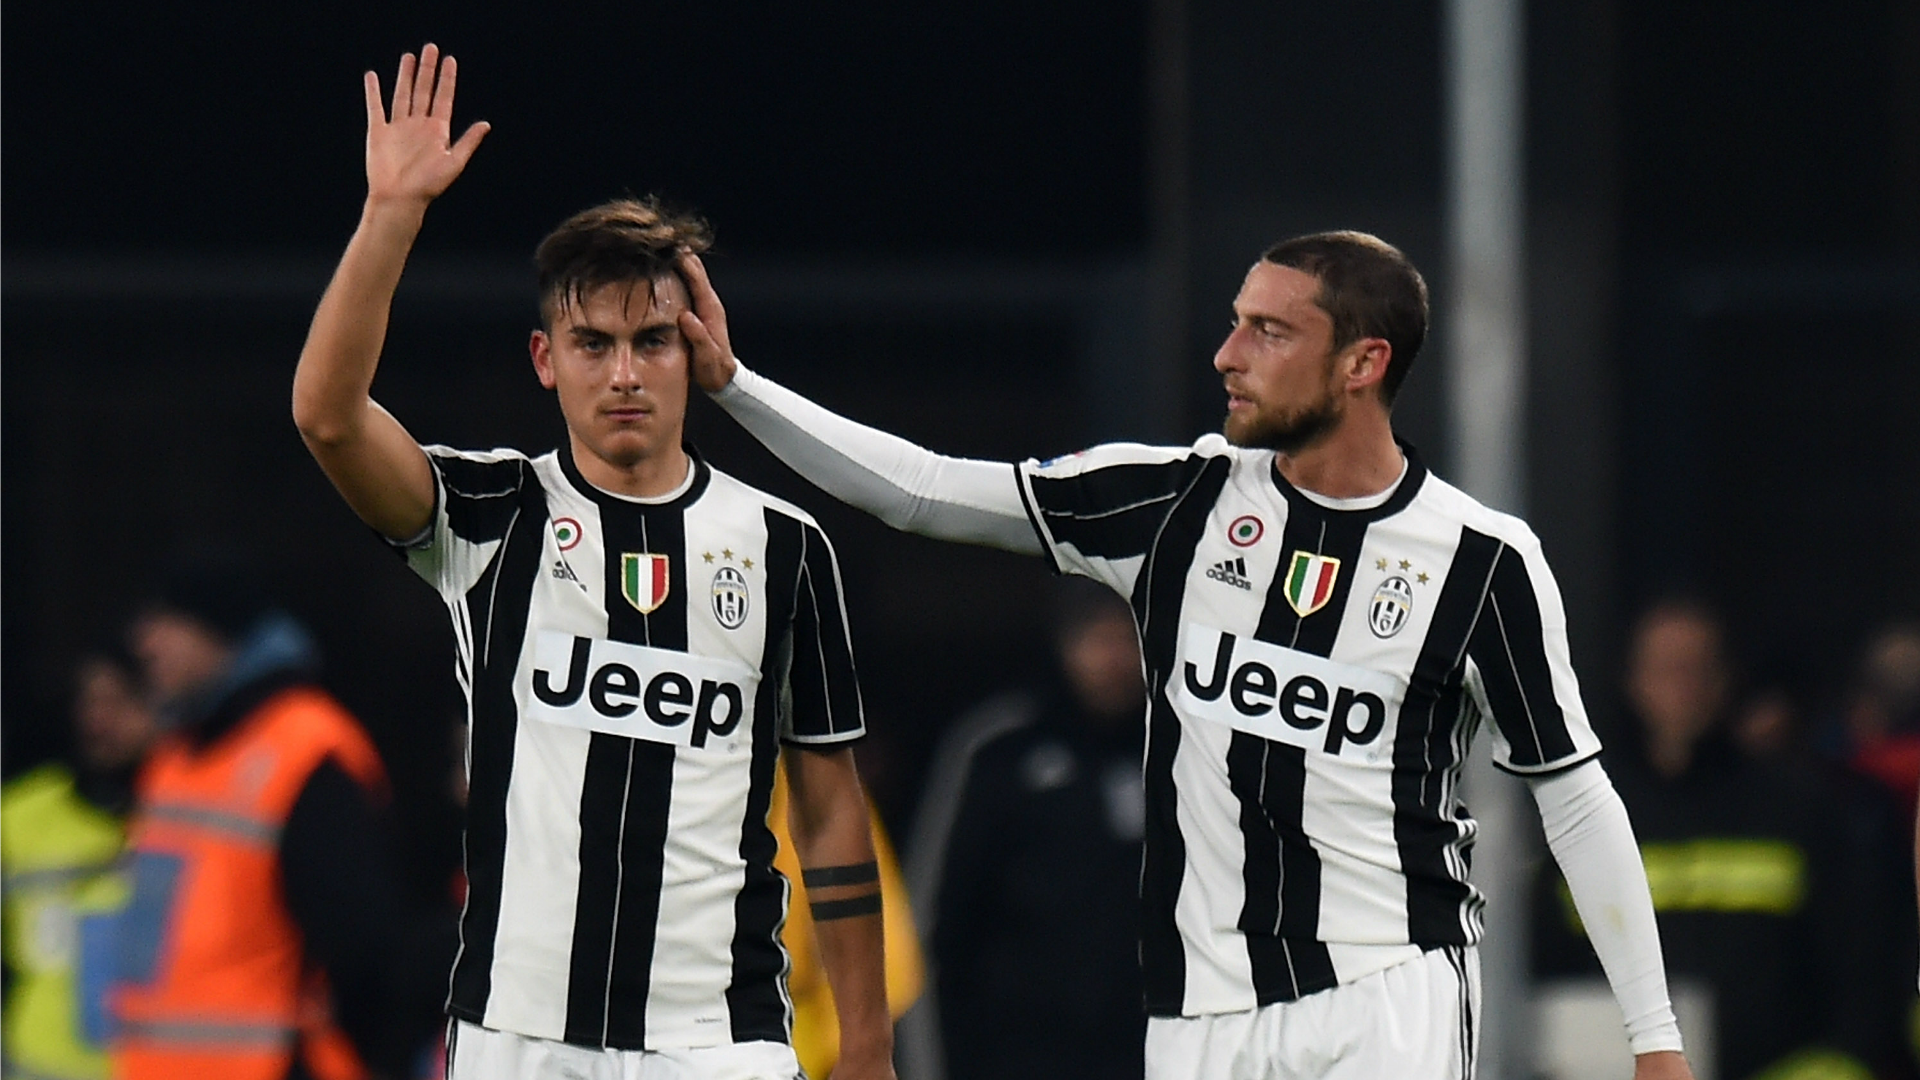 Juventus-Palerme (4-1), une belle victoire turinoise avant Porto